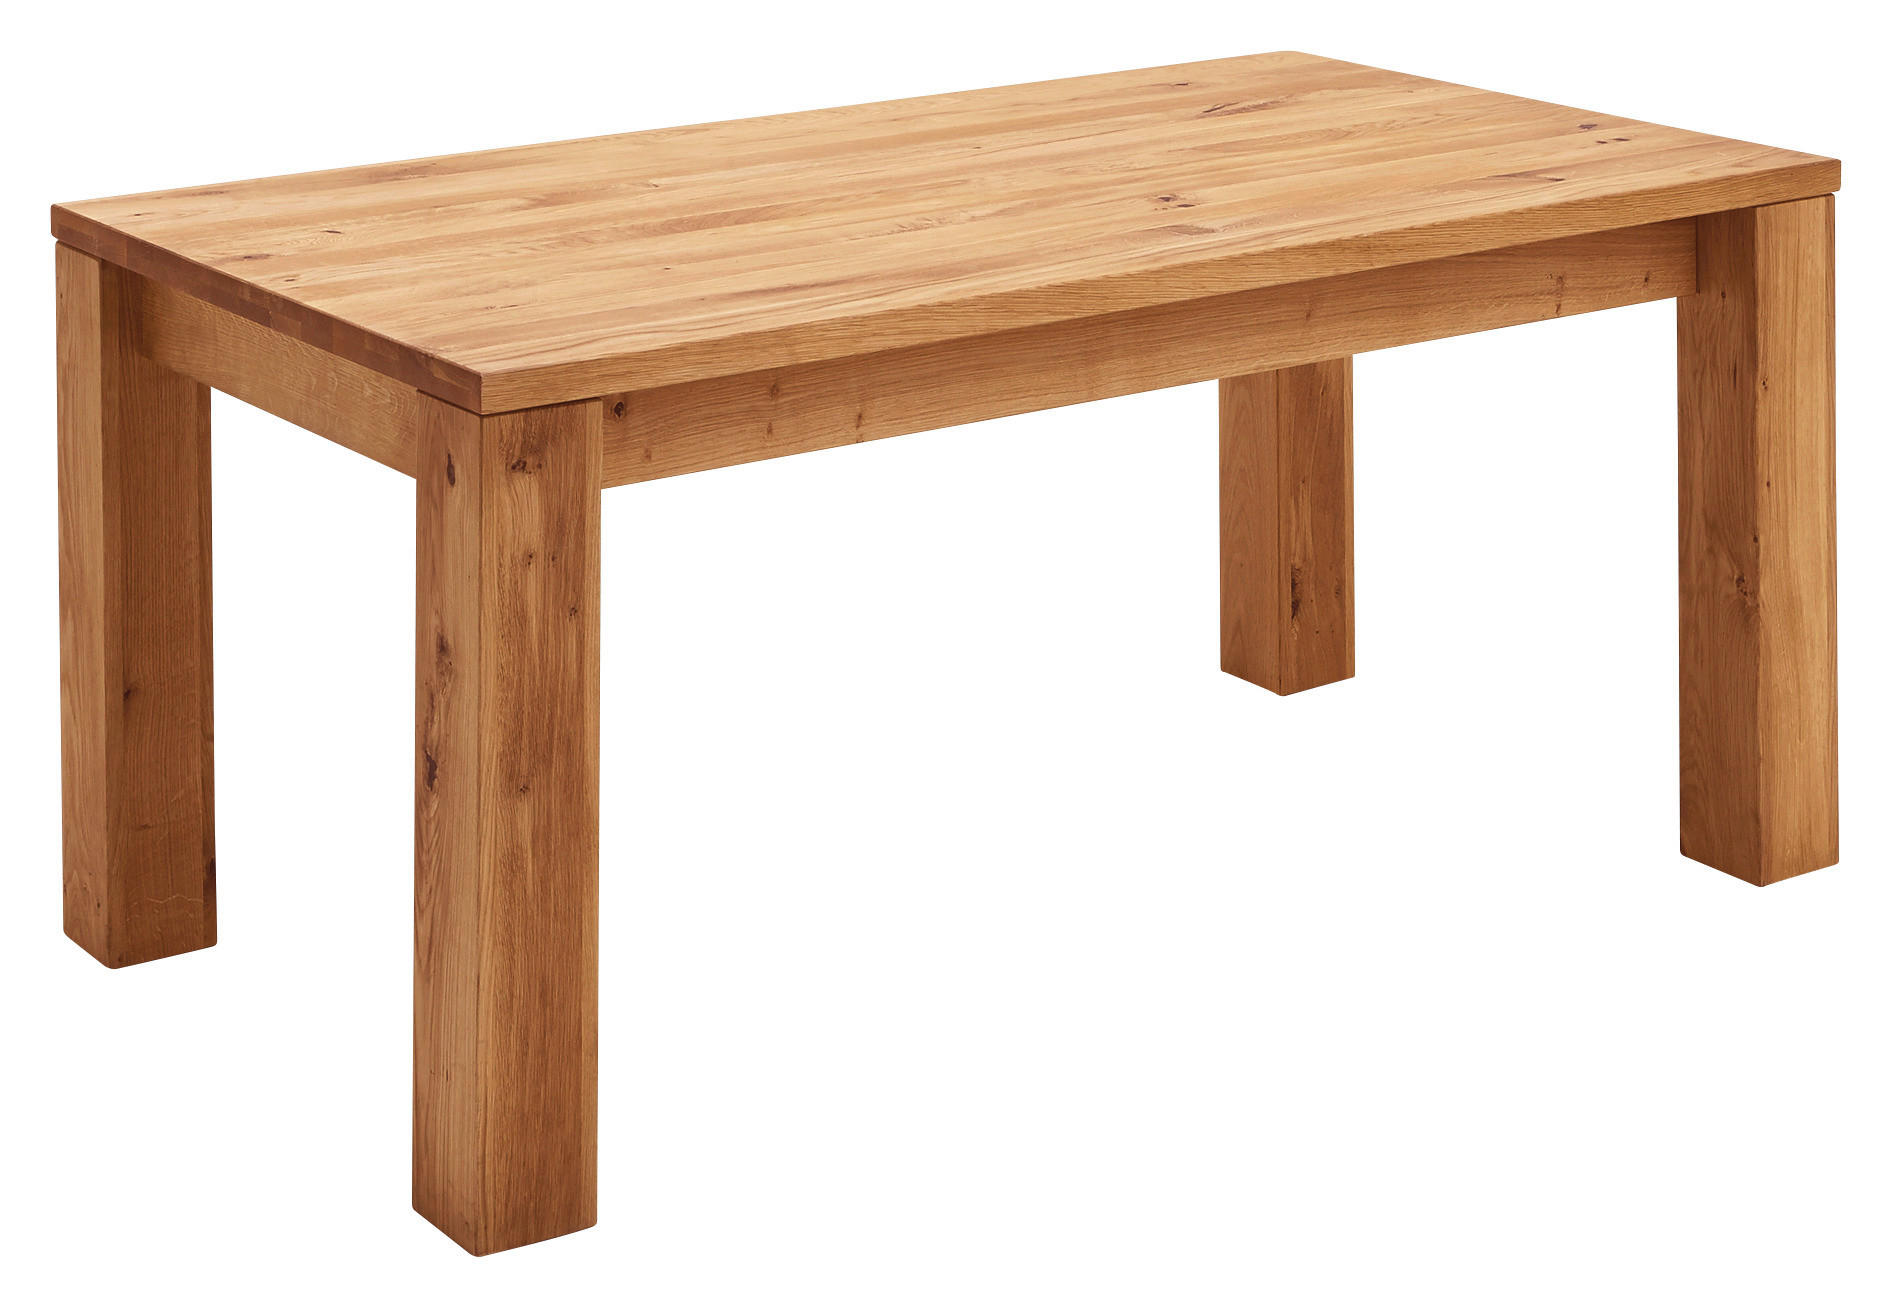 З стола. Дубовый стол. Стол дуб. Мебель стол дубовый современный. Дубовый стол сверху.